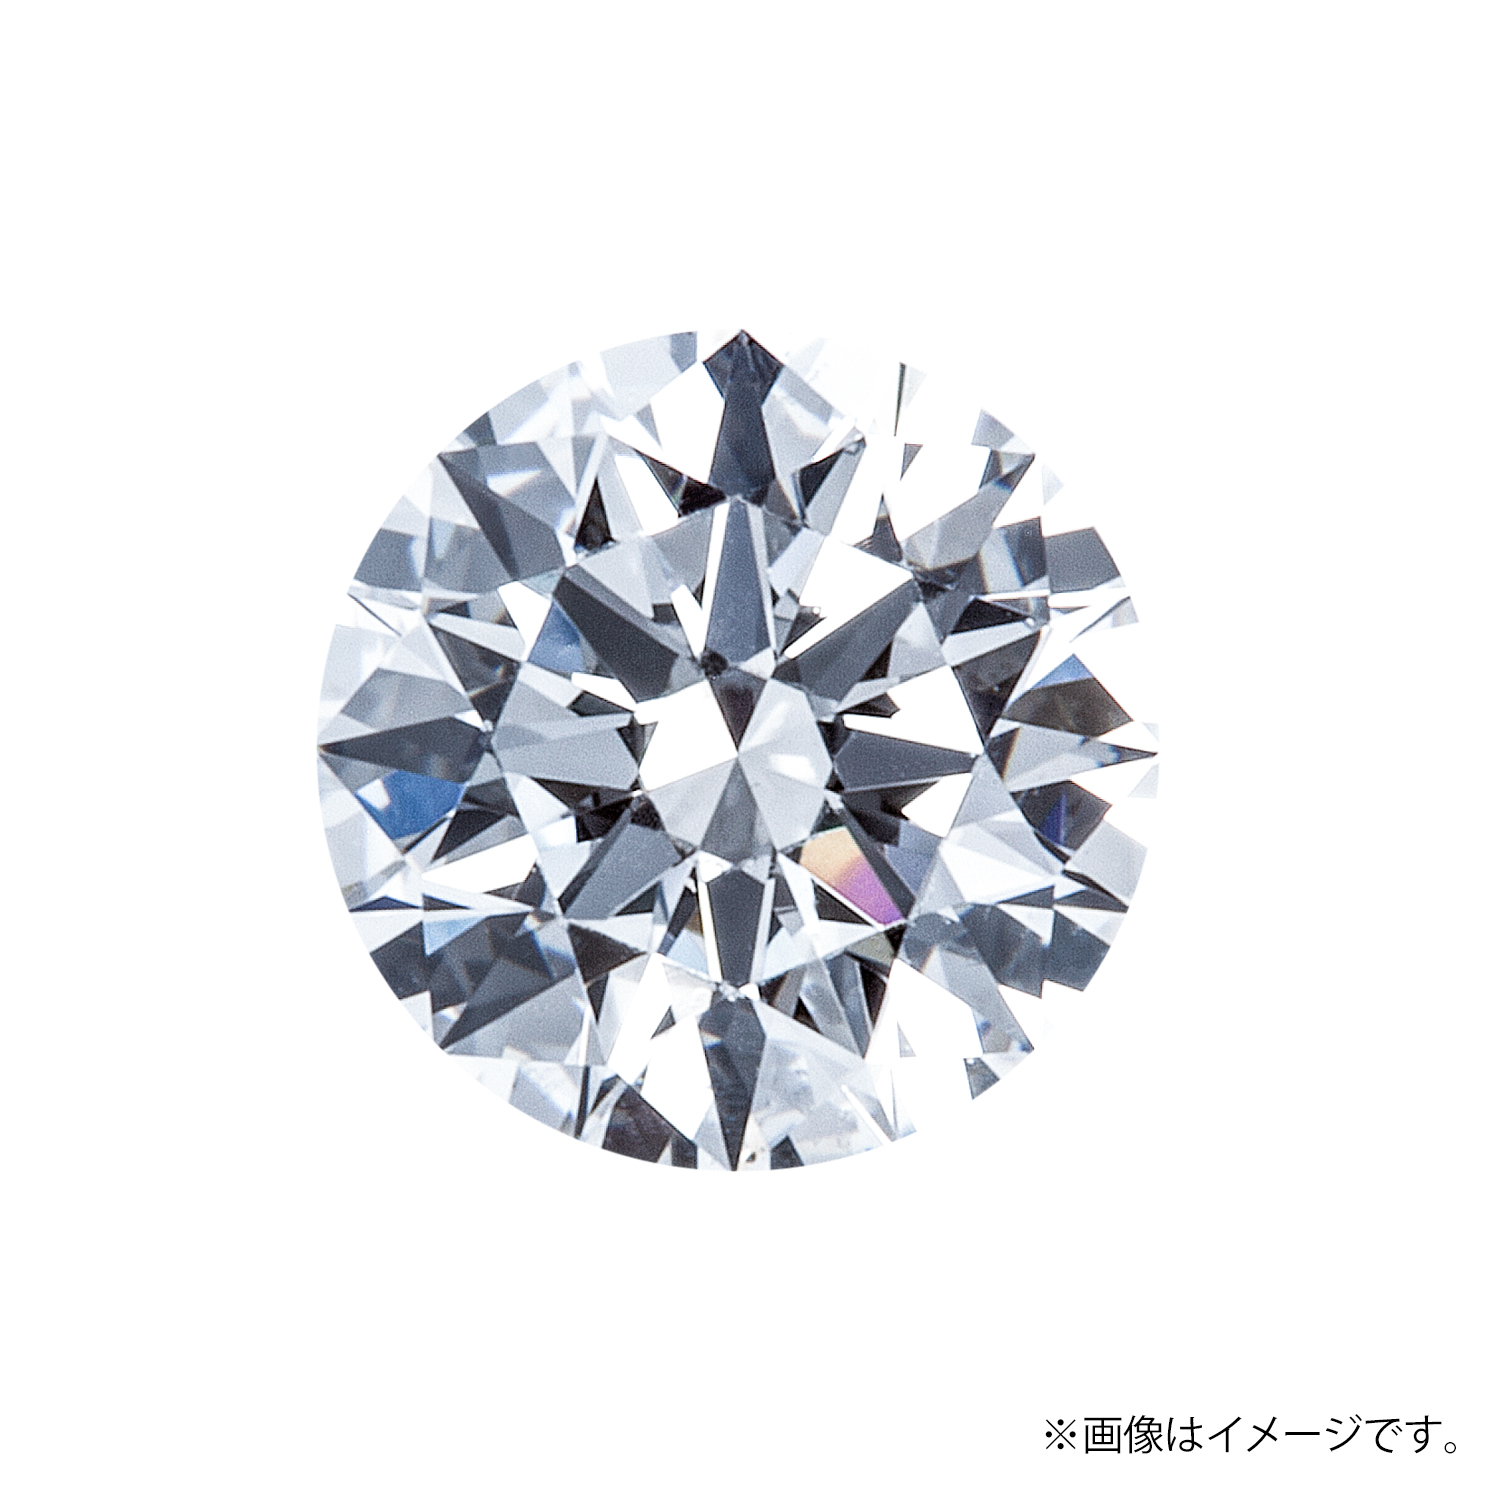 0.331ct Round ダイヤモンド / E / VS1 / 3EX-H&C